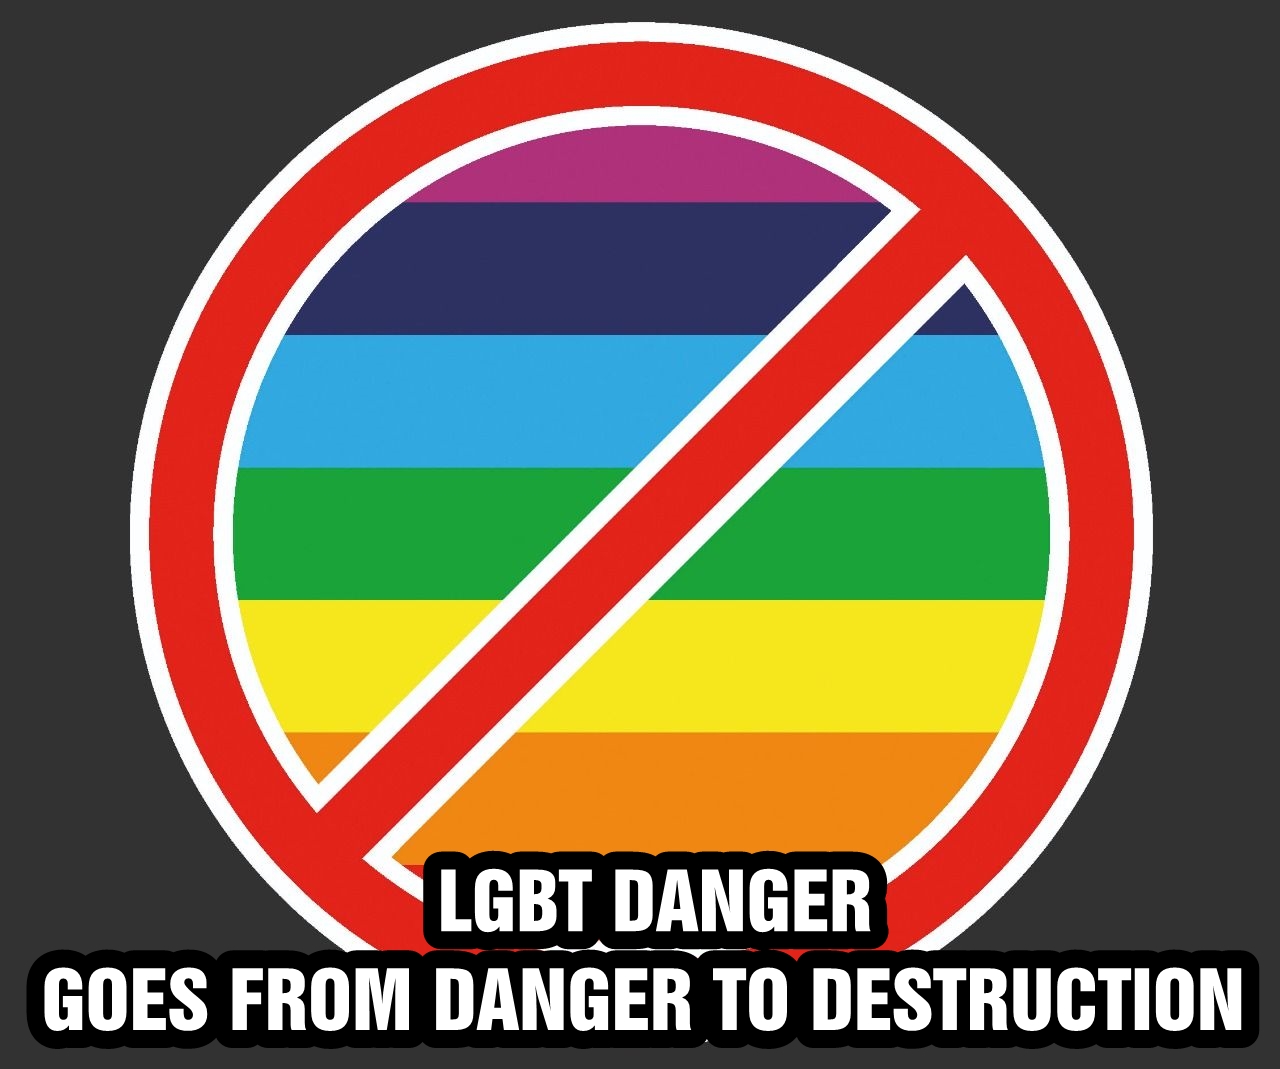 LGBT danger goes from danger to destruction